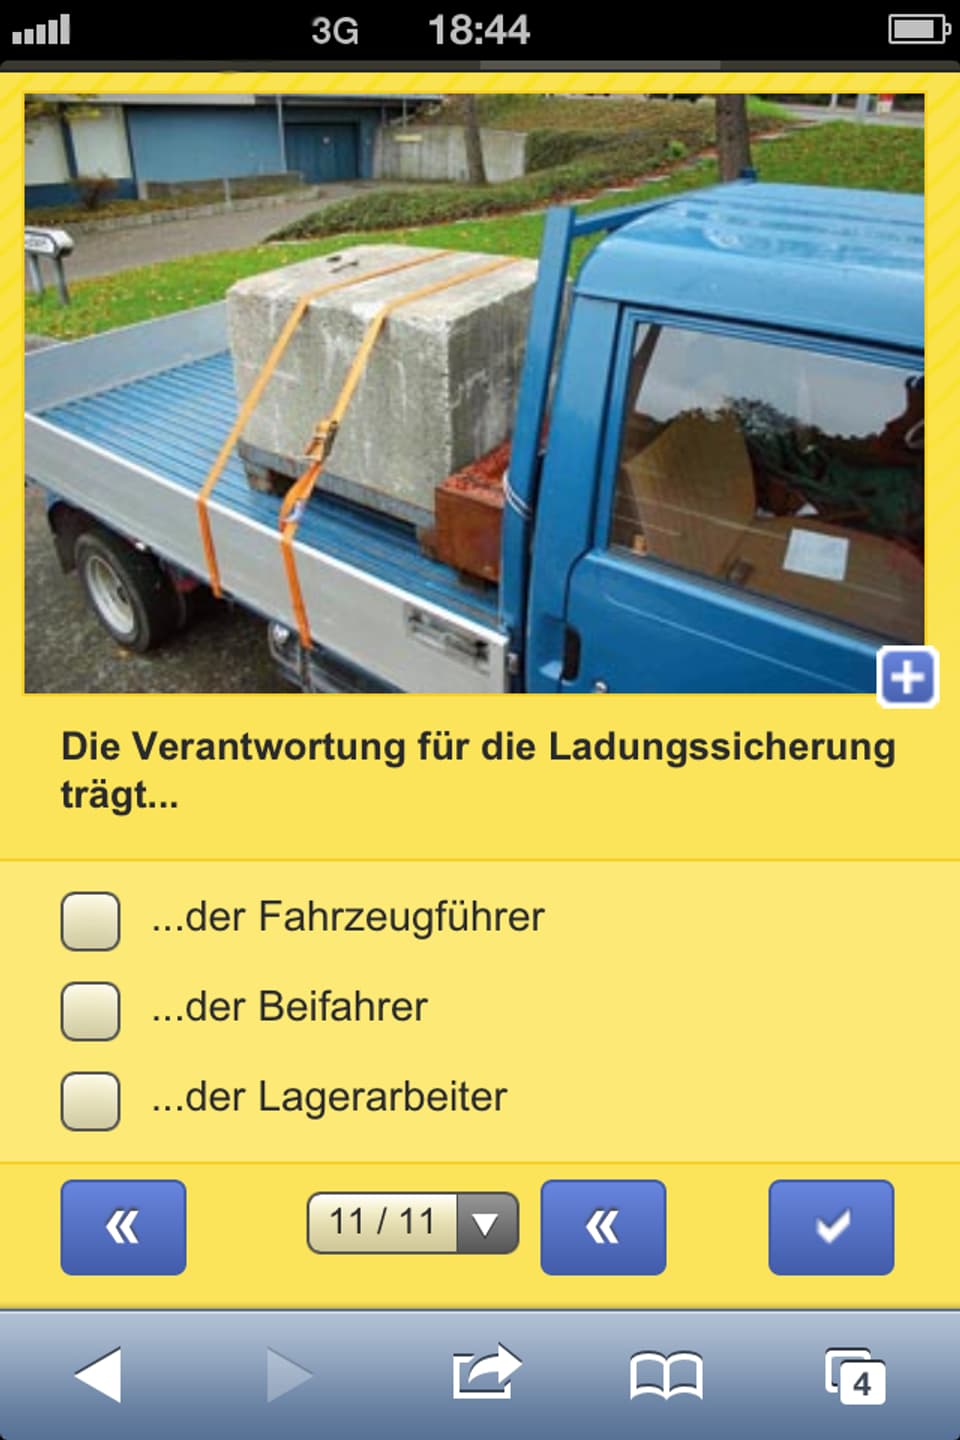 Ein Screenshot einer iPhone-App. Gefragt wird, wer die Verantwortung für die Ladunssicherung trägt, der Fahrzeugführer, der Beifahrer oder der Lagerarbeiter.